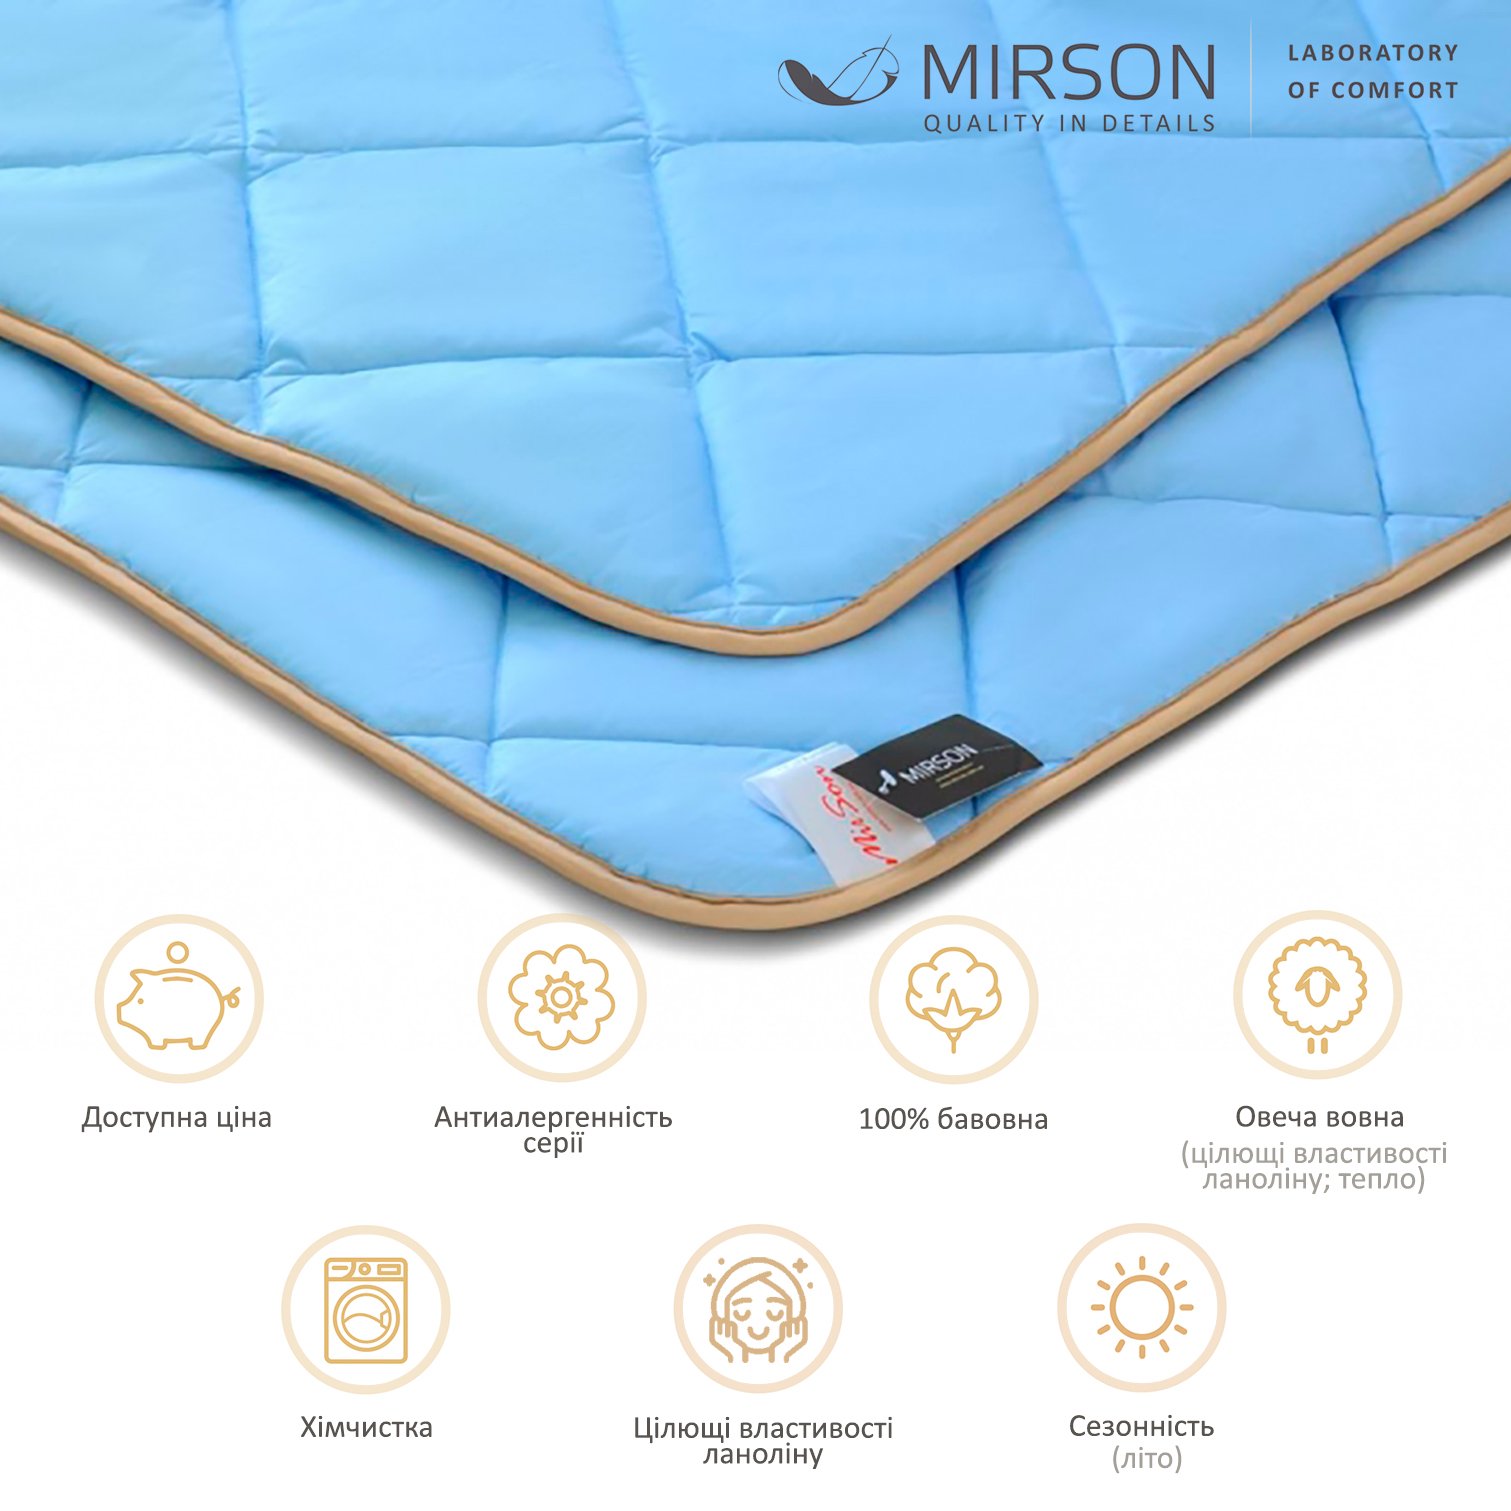 Одеяло шерстяное MirSon Valentino № 0336, летнее, 140x205 см, голубое - фото 5